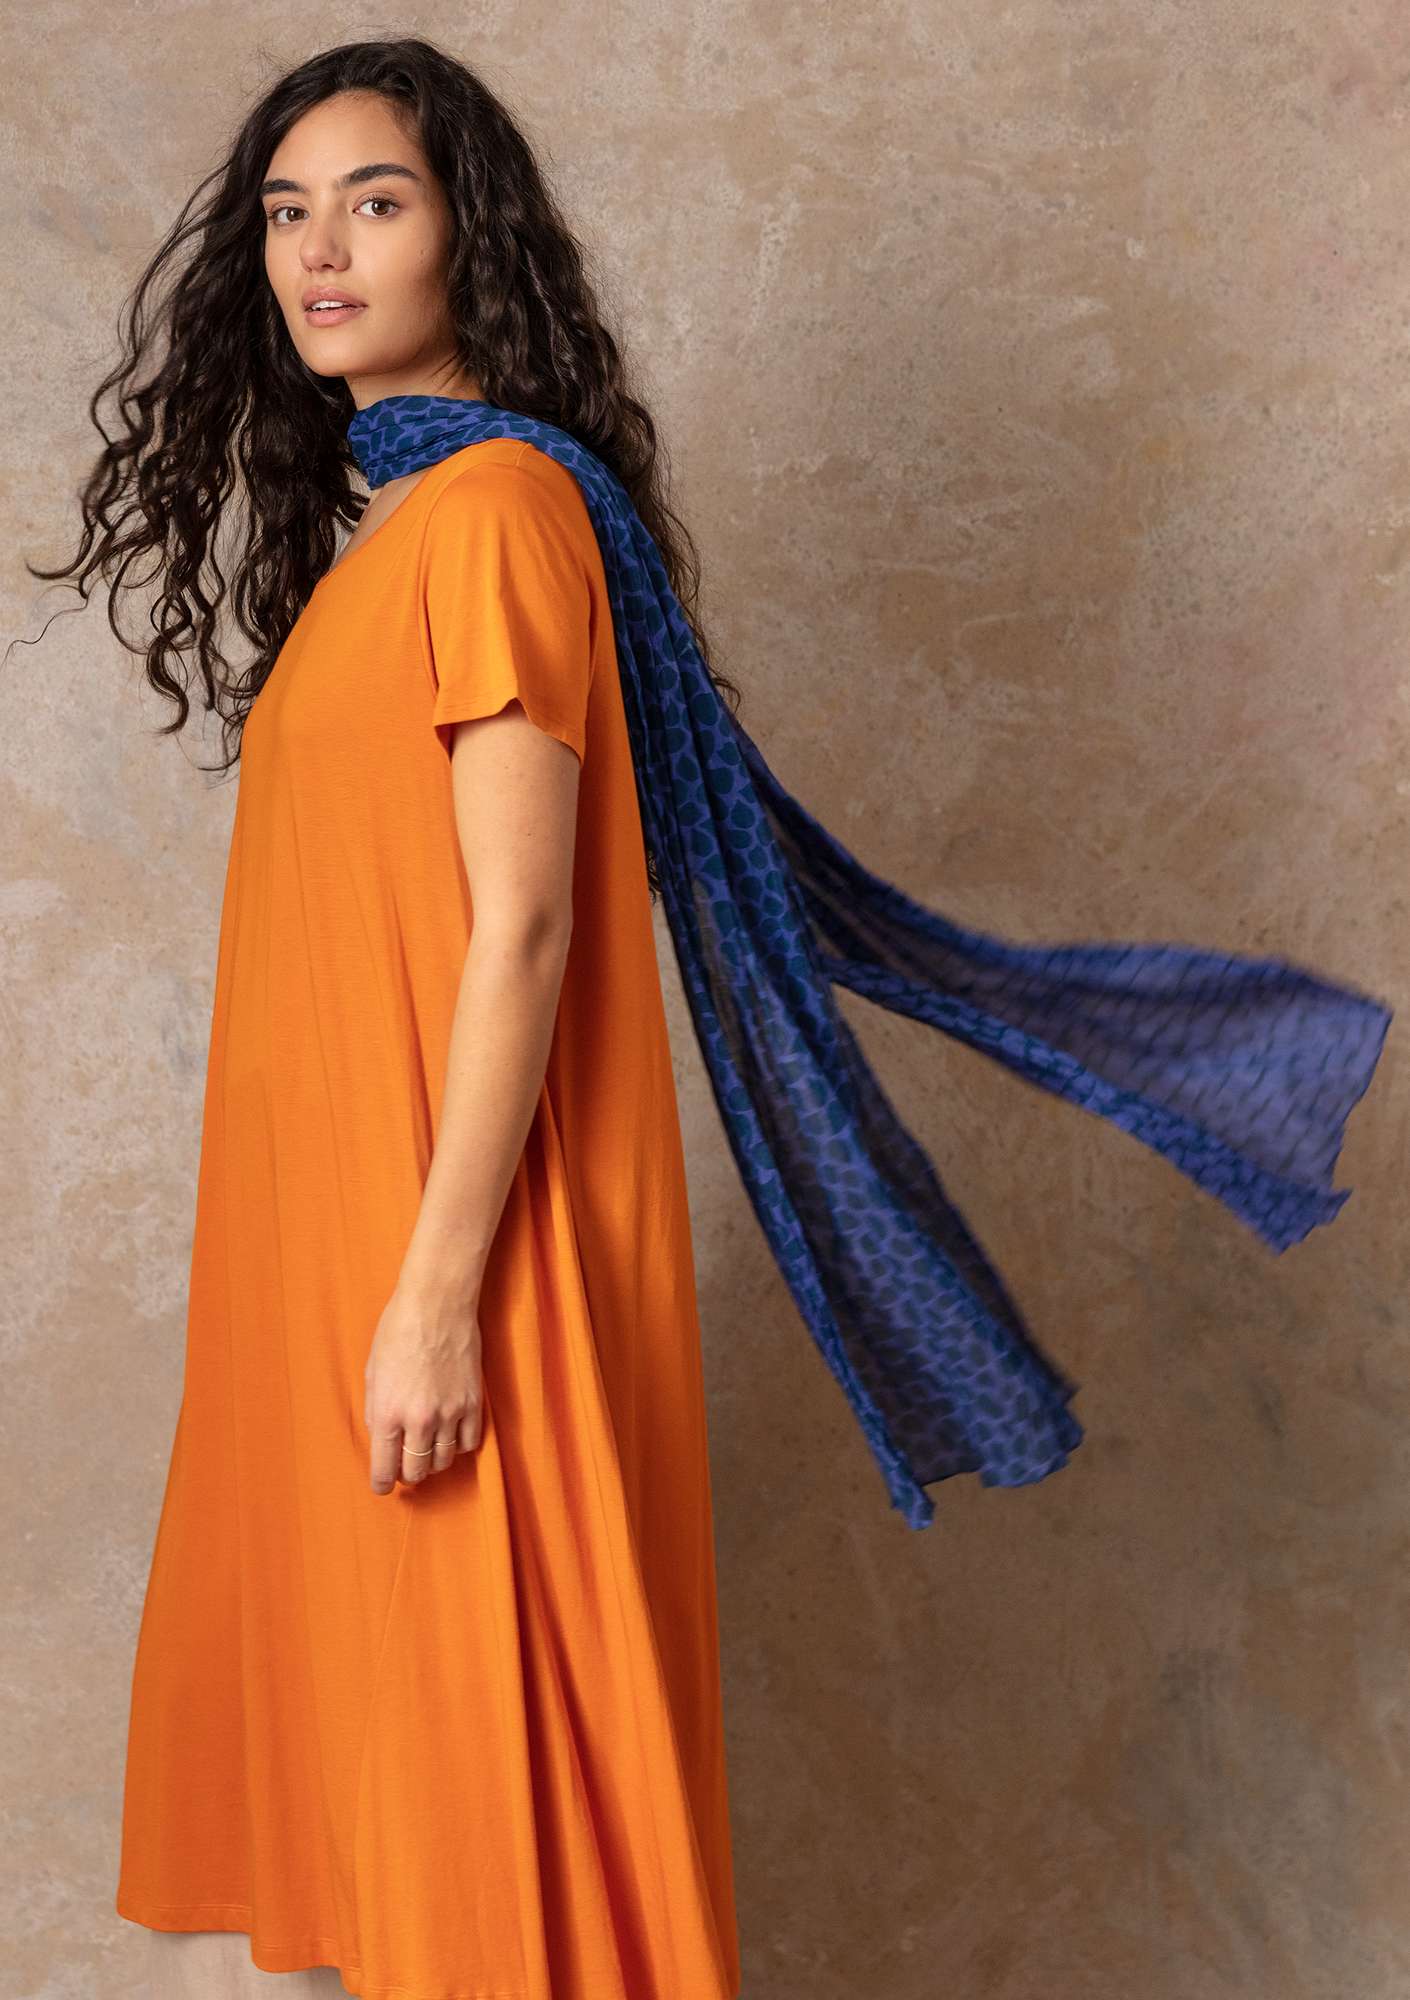 Serafina shawl indigo/patterned